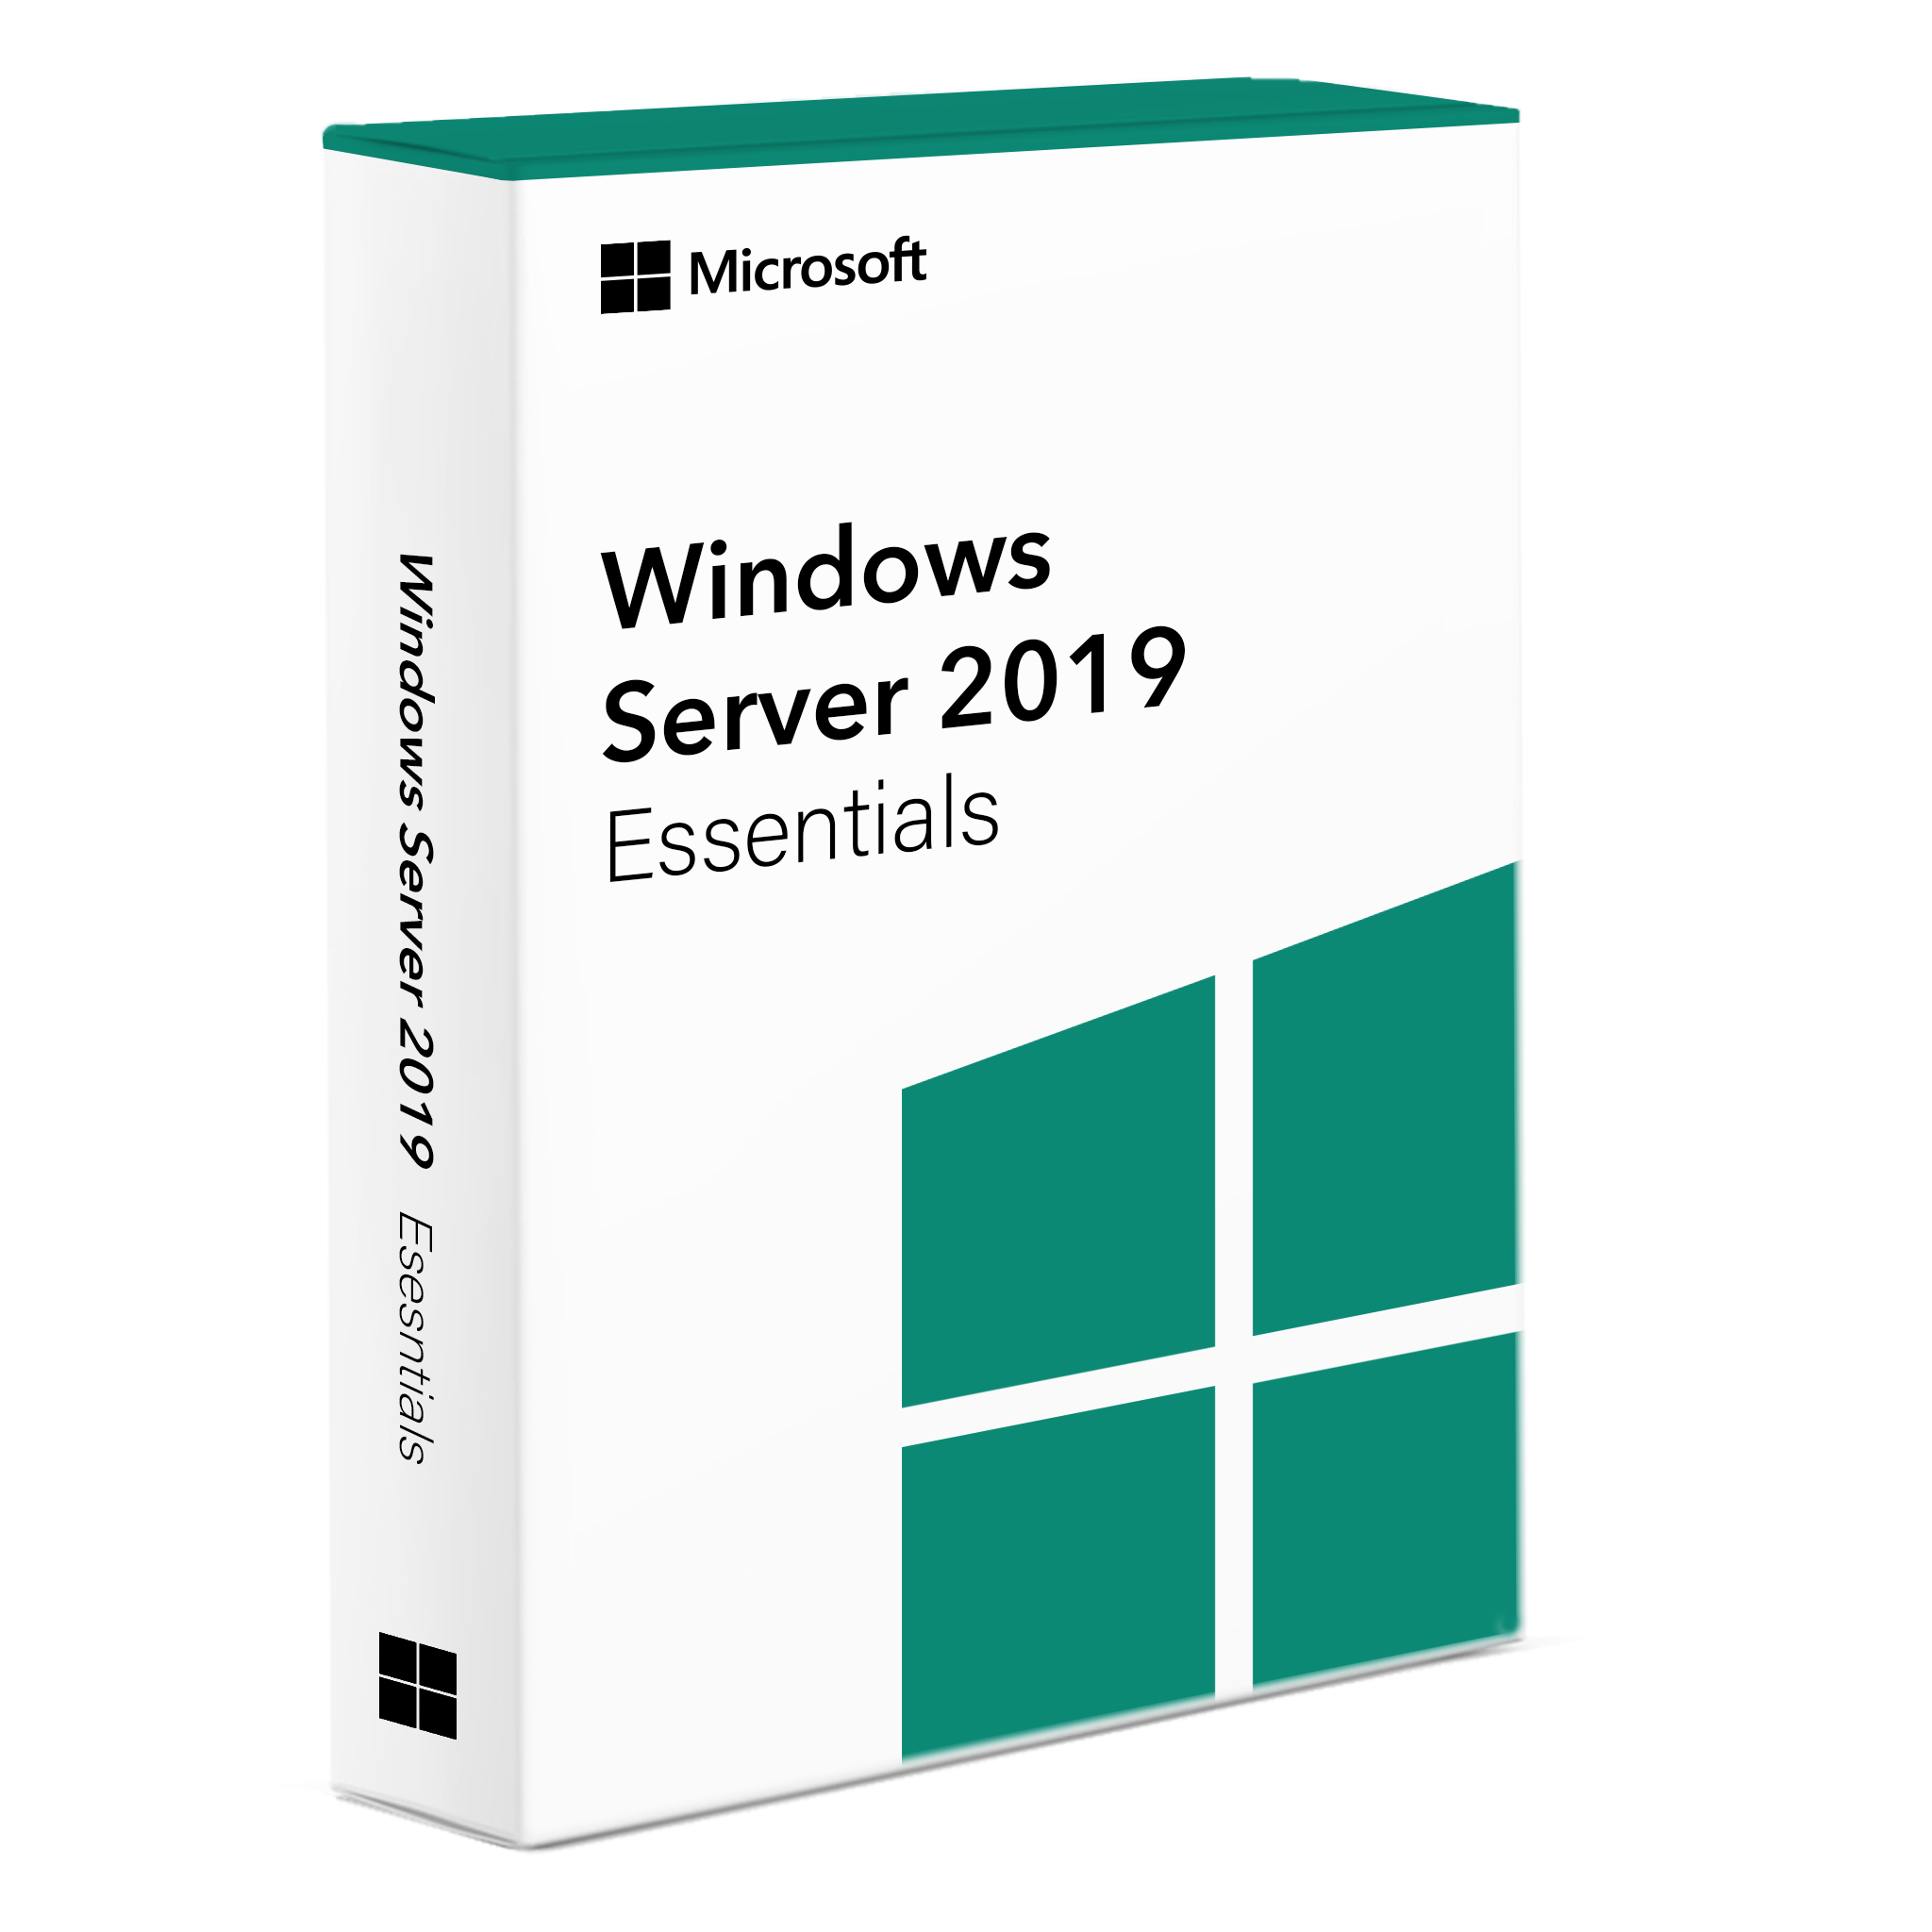 Conceptos básicos de Windows Server 2019